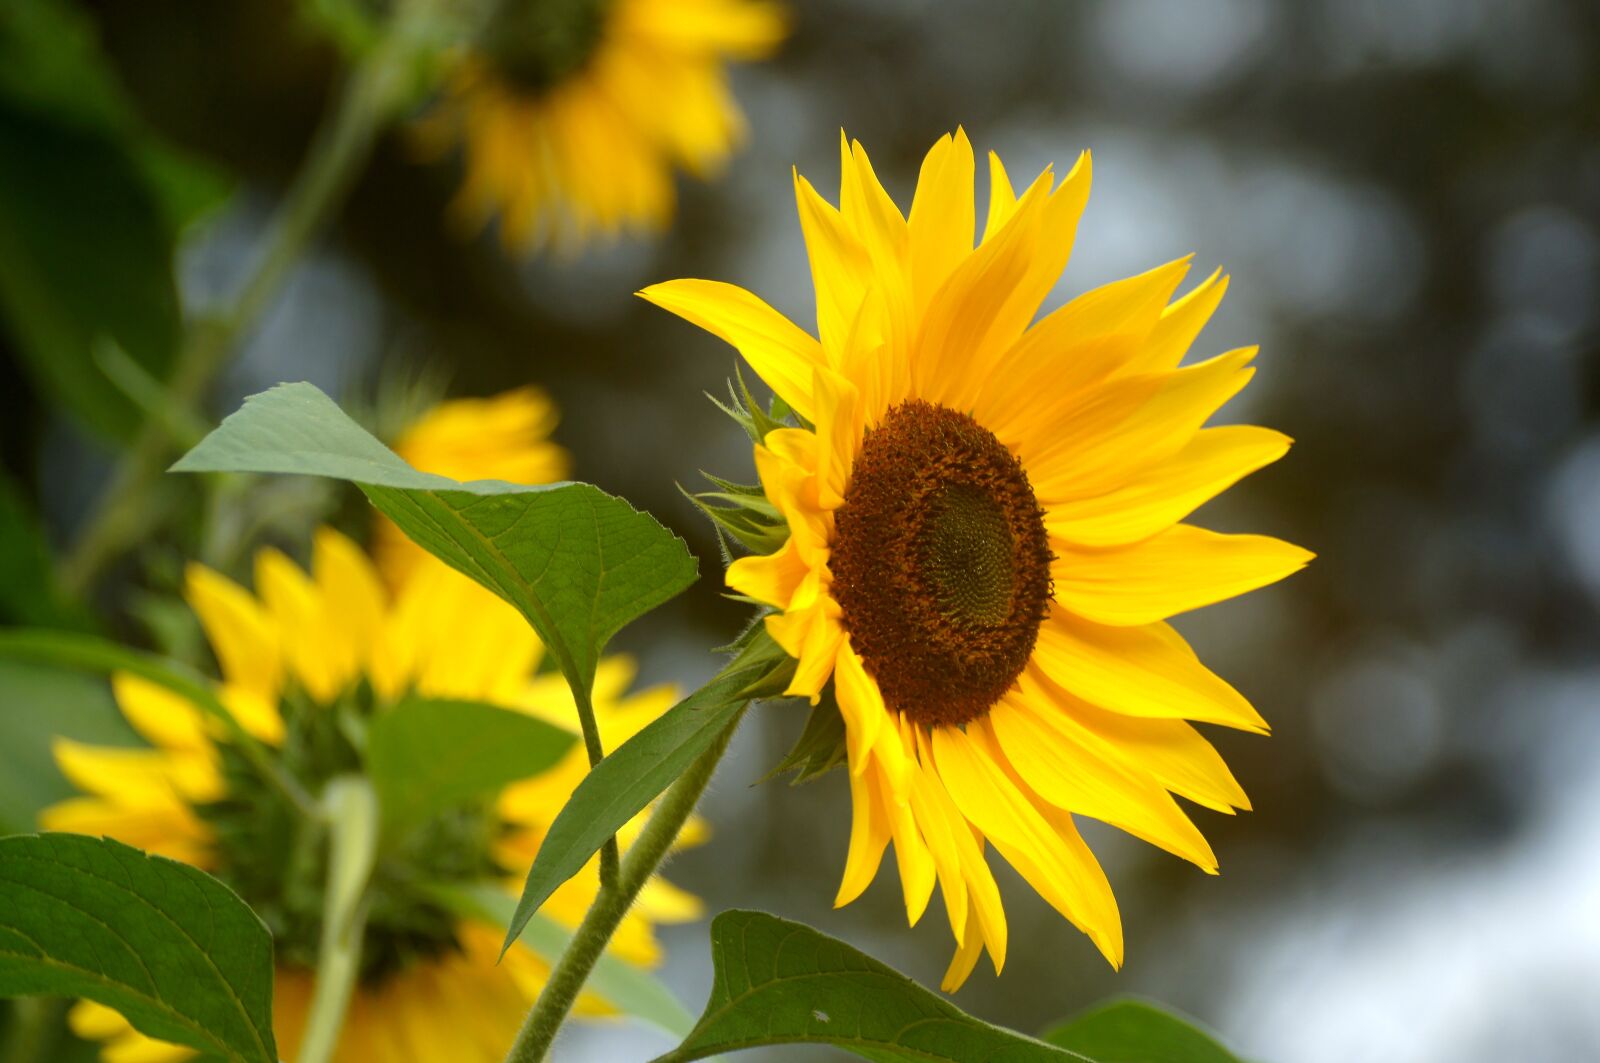 Sony Alpha DSLR-A580 sample photo. Sunflower, flower, sun photography